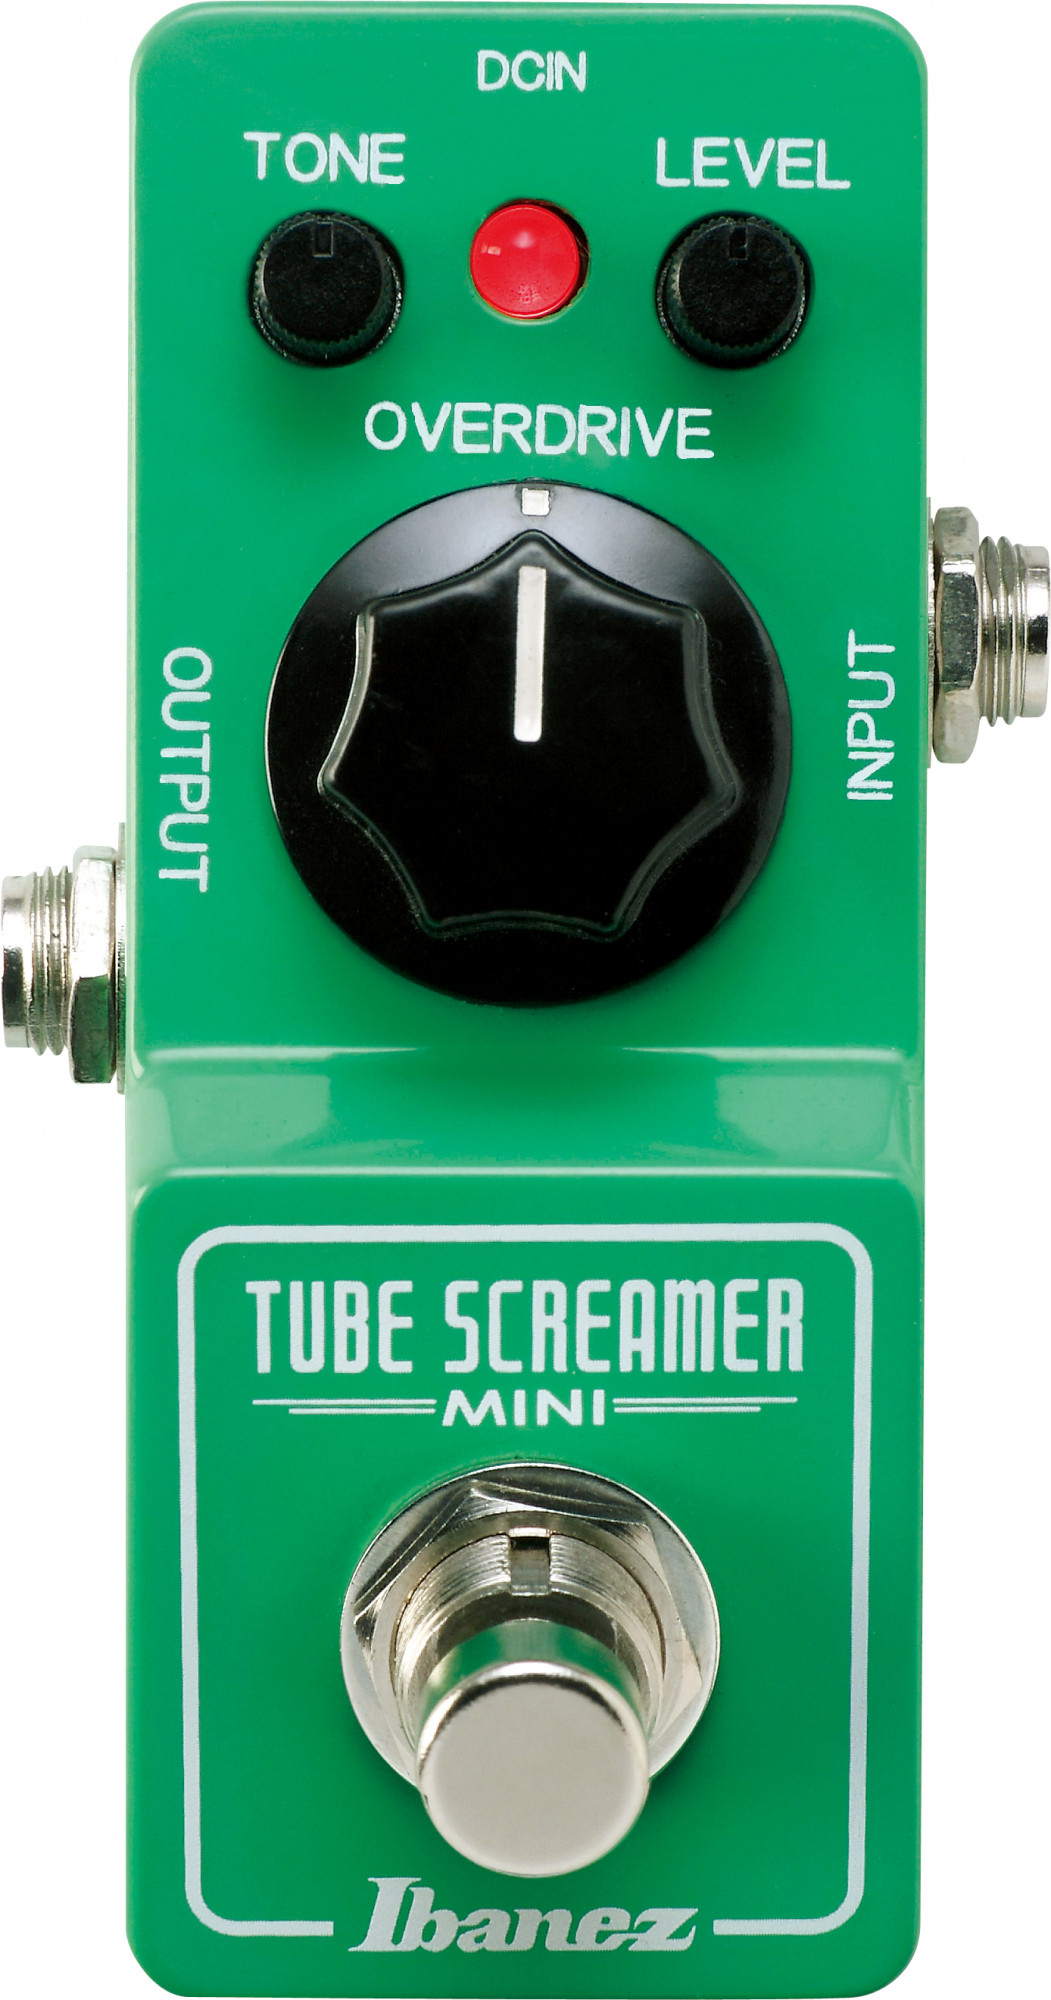 TS Mini Tube Screamer